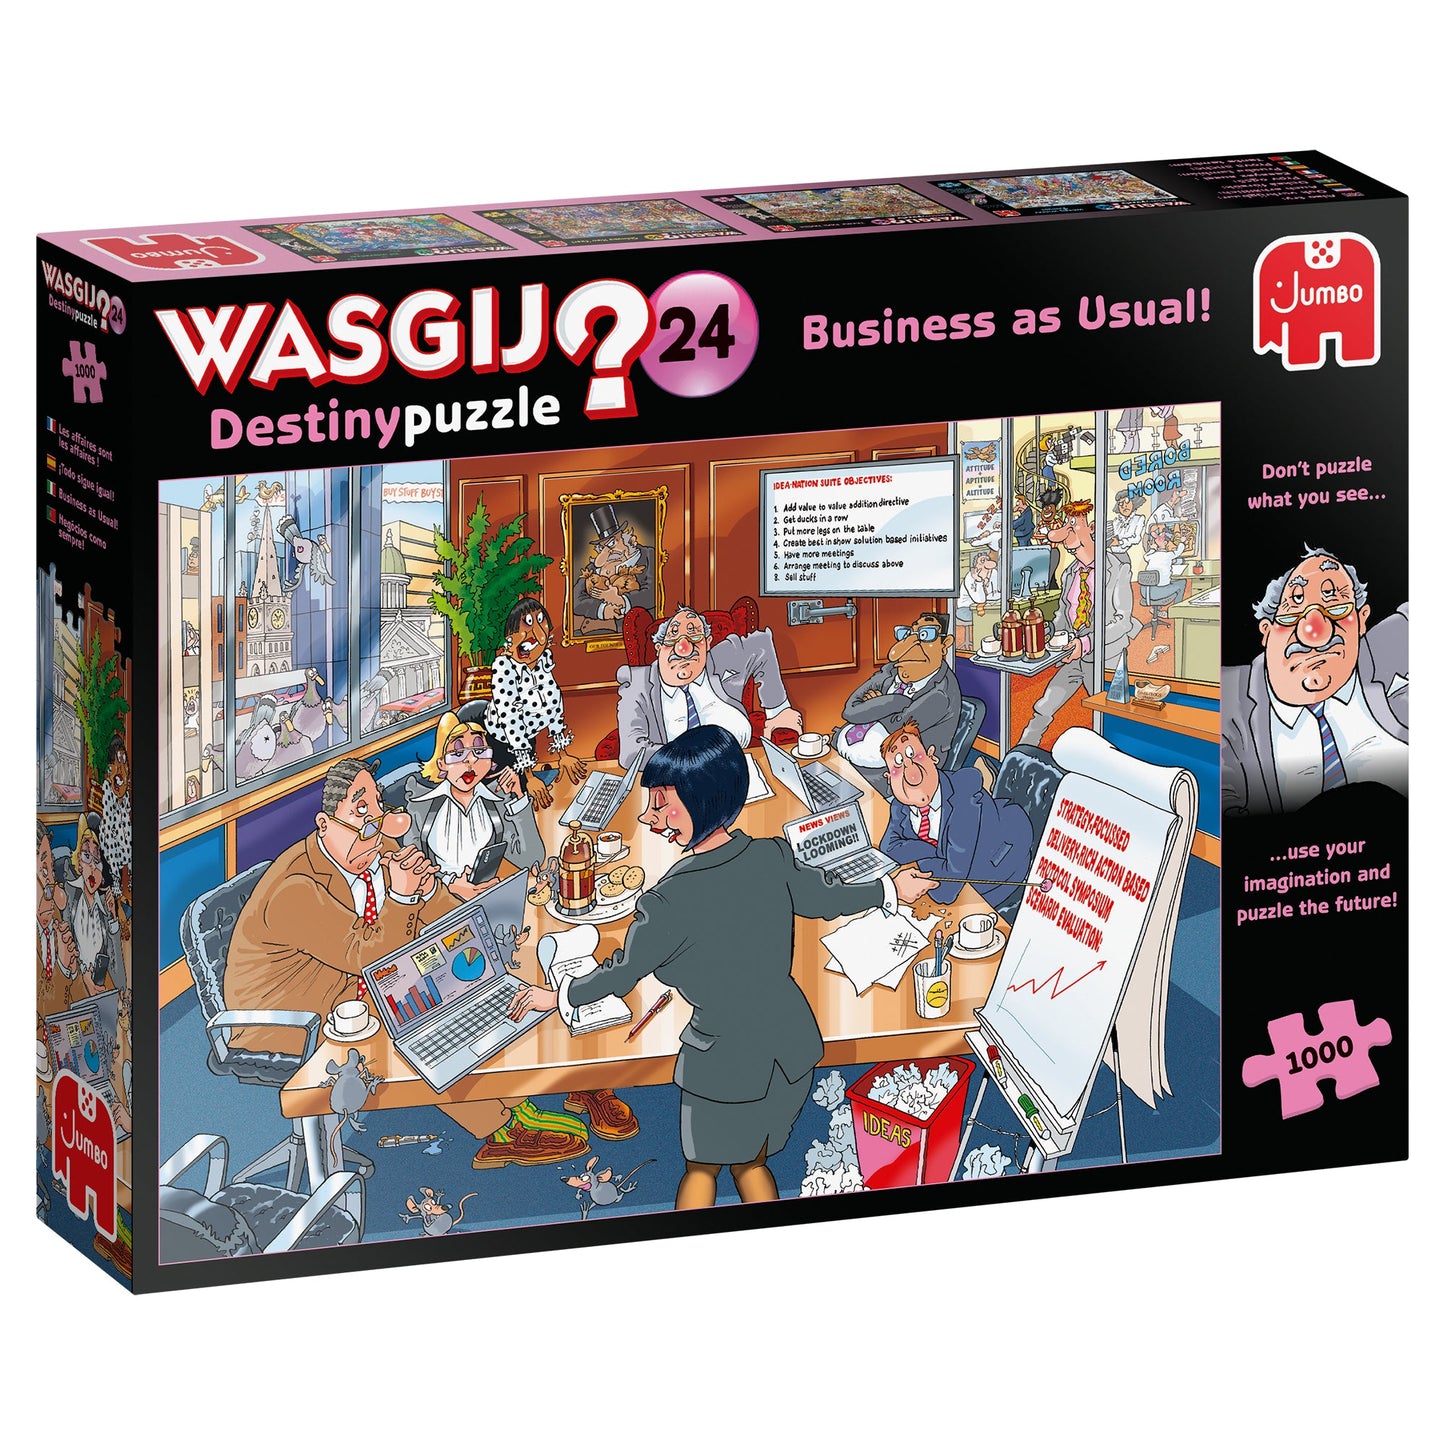 Wasgij Destiny 24 Business as Usual 1000 Piece Jigsaw Puzzle 2